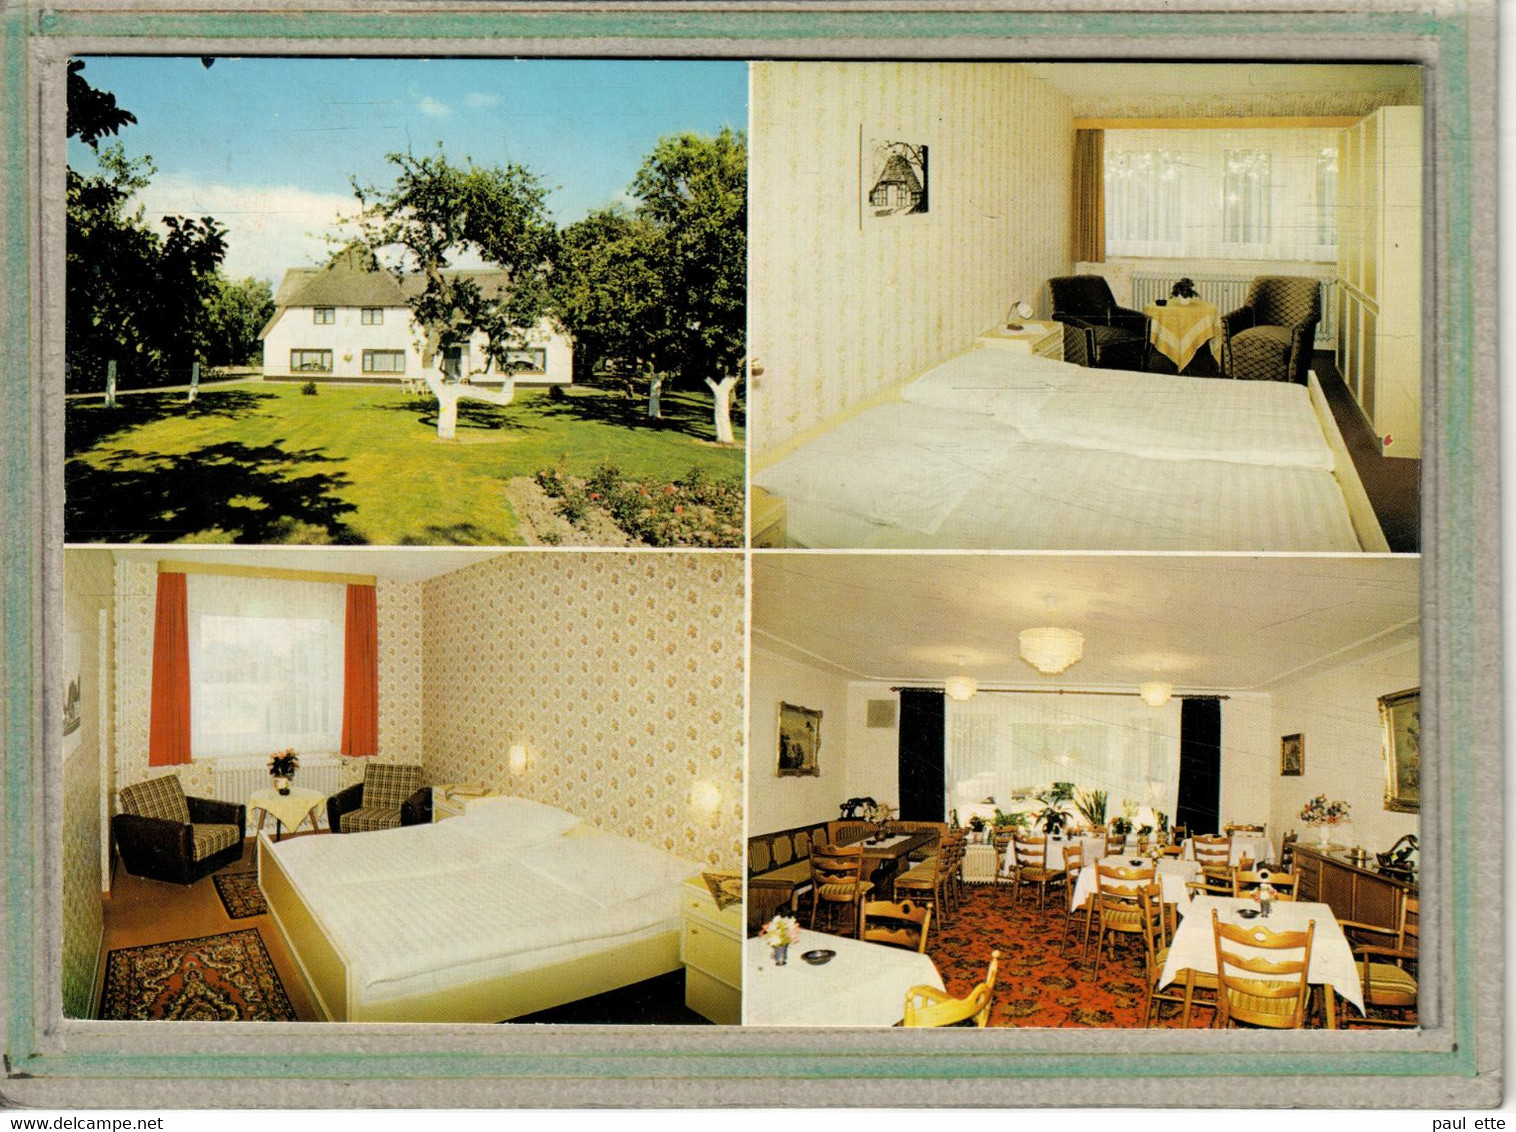 CPSM Dentelée - (Allemagne-Schleswig-Holstein) - ST. PETER-ORDING - Hotel Garni Zum Landhaus - Doppelkarte - 1970 / 80 - St. Peter-Ording